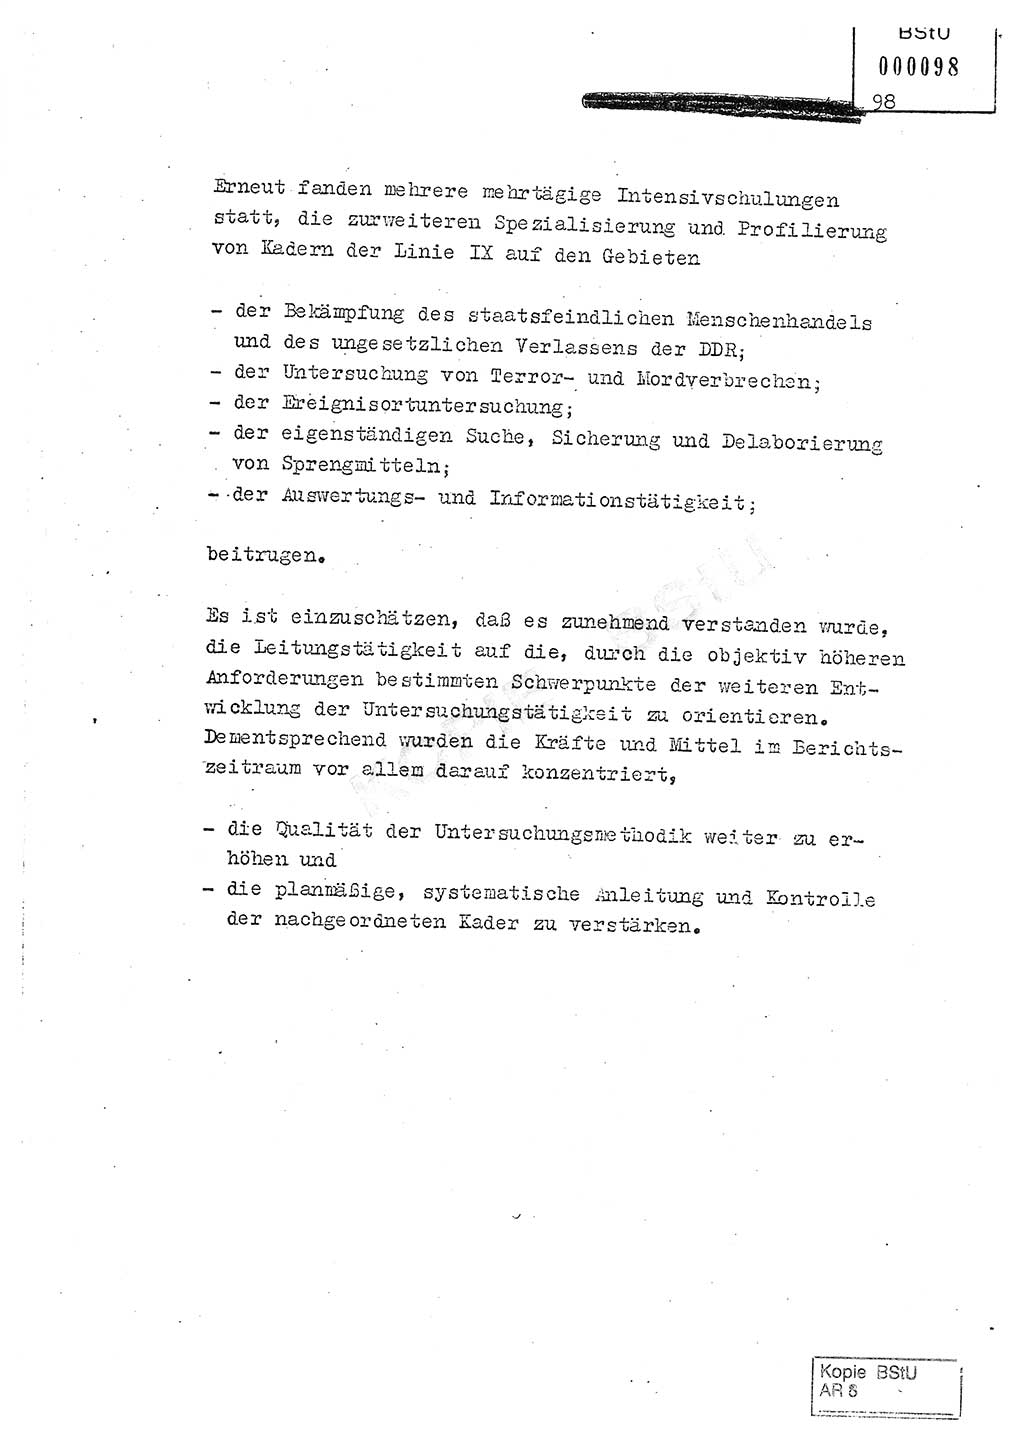 Jahresbericht der Hauptabteilung (HA) Ⅸ 1980, Analyse über die Entwicklung und die Wirksamkeit der politisch-operativen Arbeit der Linie Ⅸ in der Zeit vom 1. Januar 1980 bis 30. September 1980, Ministerium für Staatssicherheit (MfS) der Deutschen Demokratischen Republik (DDR), Hauptabteilung Ⅸ, Geheime Verschlußsache (GVS) 014-660/80, Berlin 1980, Seite 98 (Anal. MfS DDR HA Ⅸ GVS 014-660/80 1980, S. 98)